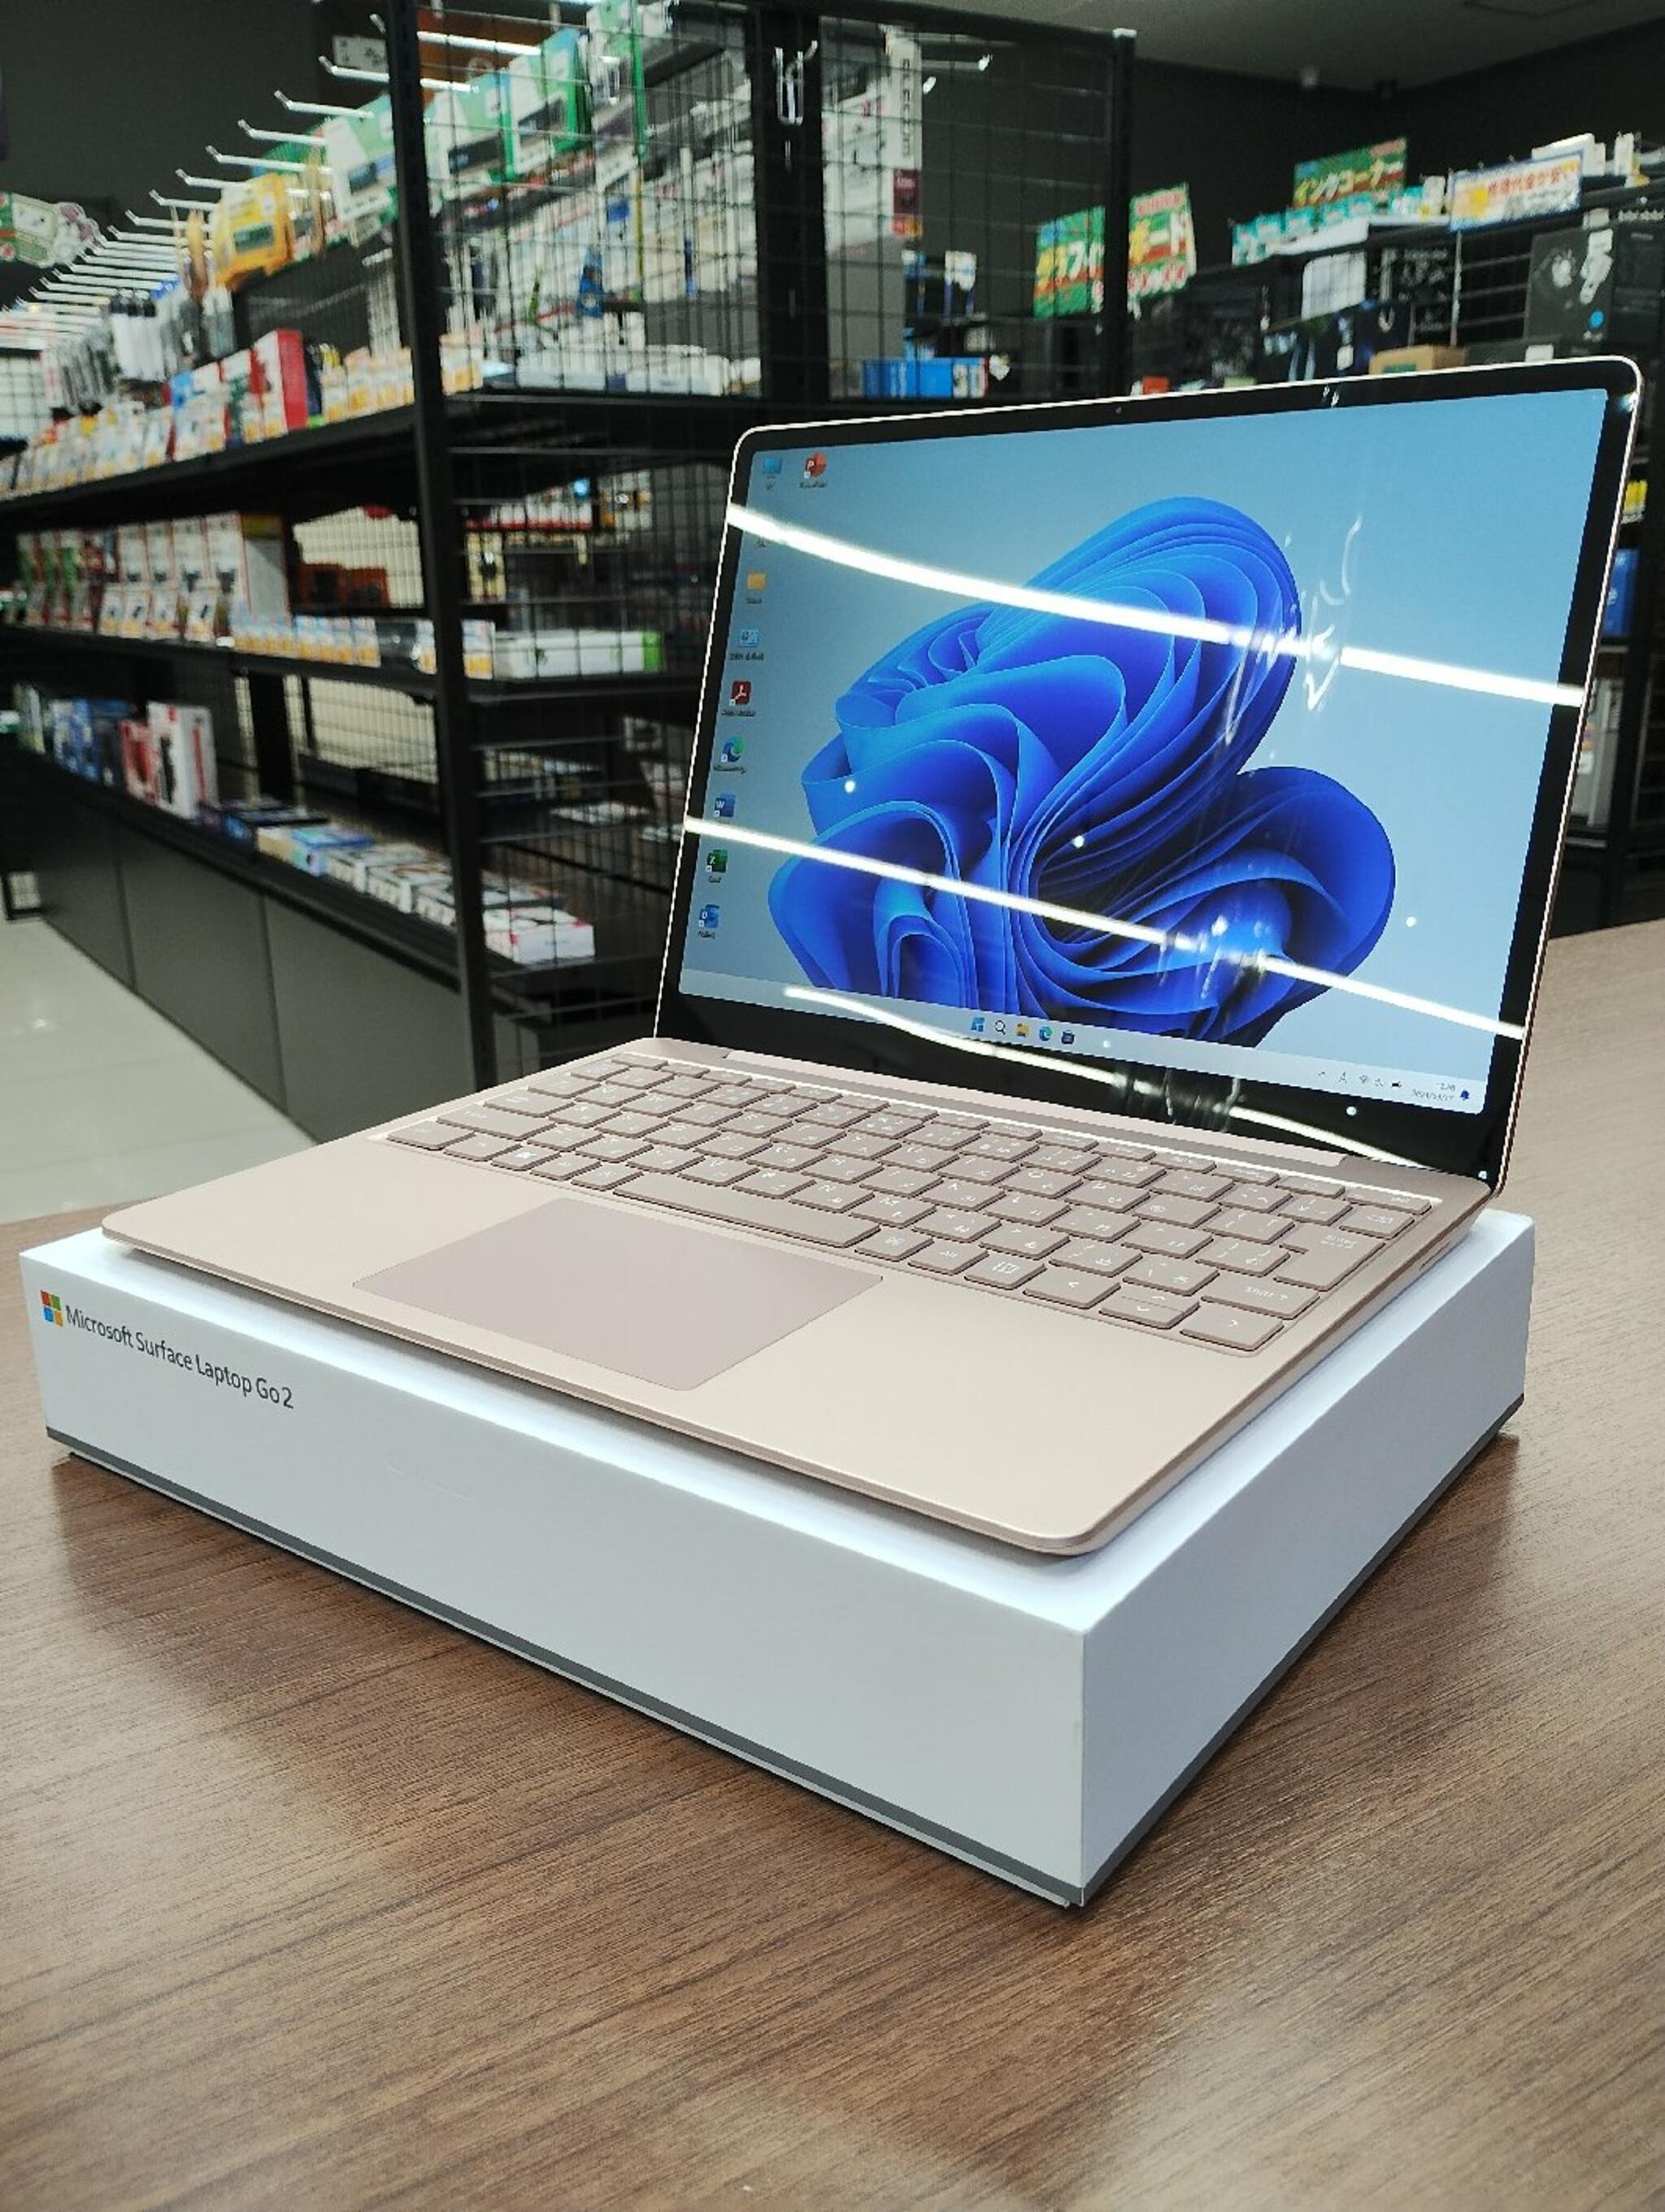 パソコン専門店 大西ジム 新長田店からのお知らせ(「Surface Laptop Go」ご購入いただきました。)に関する写真